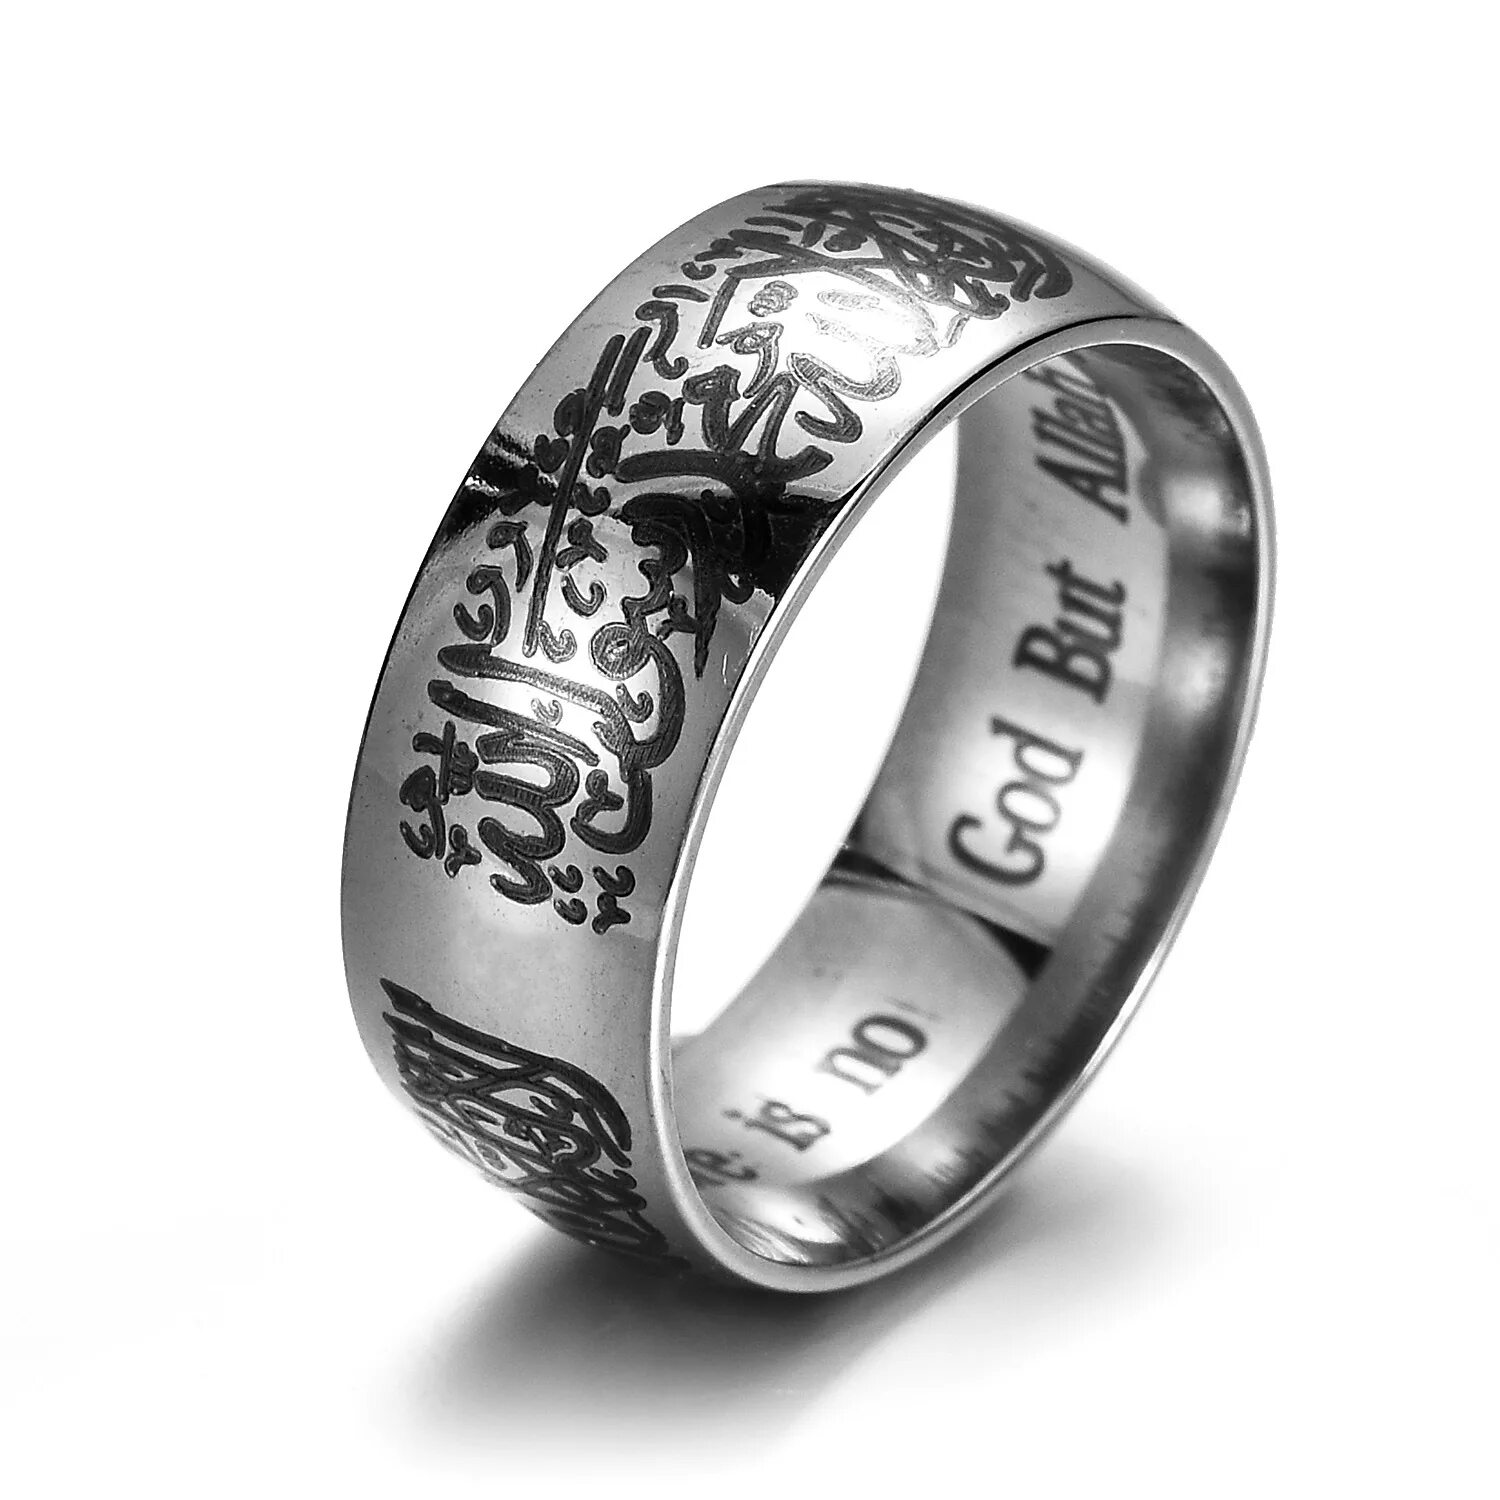 Мусульманское кольцо из серебра артикул: 95010065. Кольцо шахада серебро. Серебро 925 кольца мужские мусульманские. Мусульманское кольцо женское серебряное.